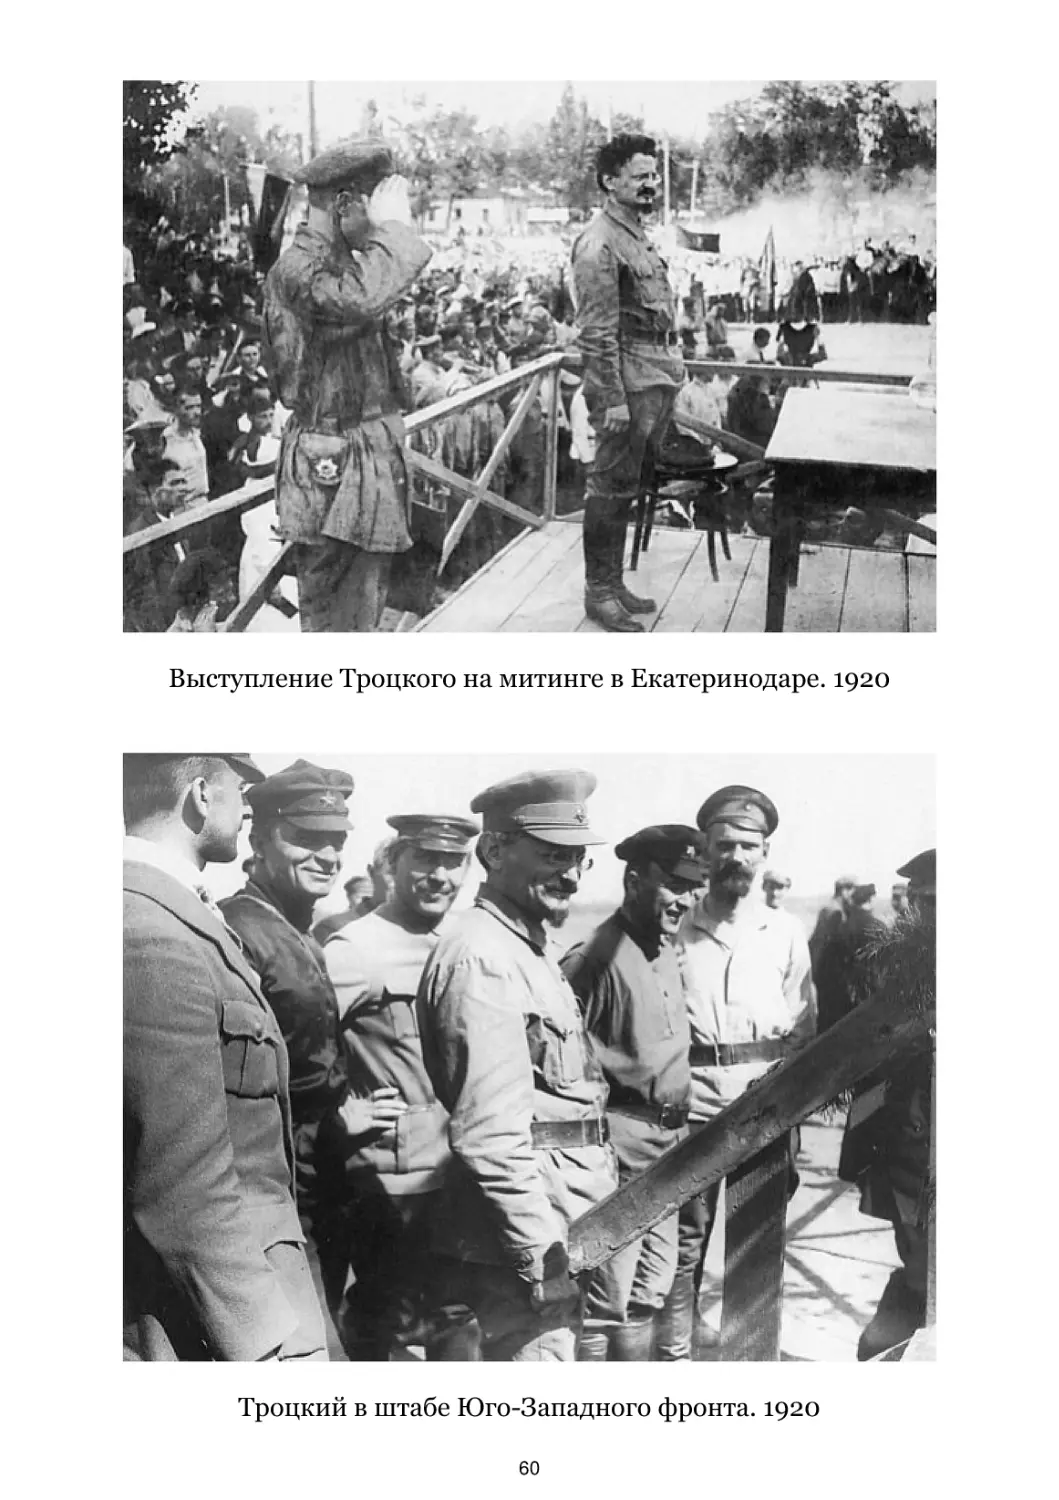 Выступление Троцкого на митинге в Екатеринодаре. 1920
Троцкий в штабе Юго-Западного фронта. 1920